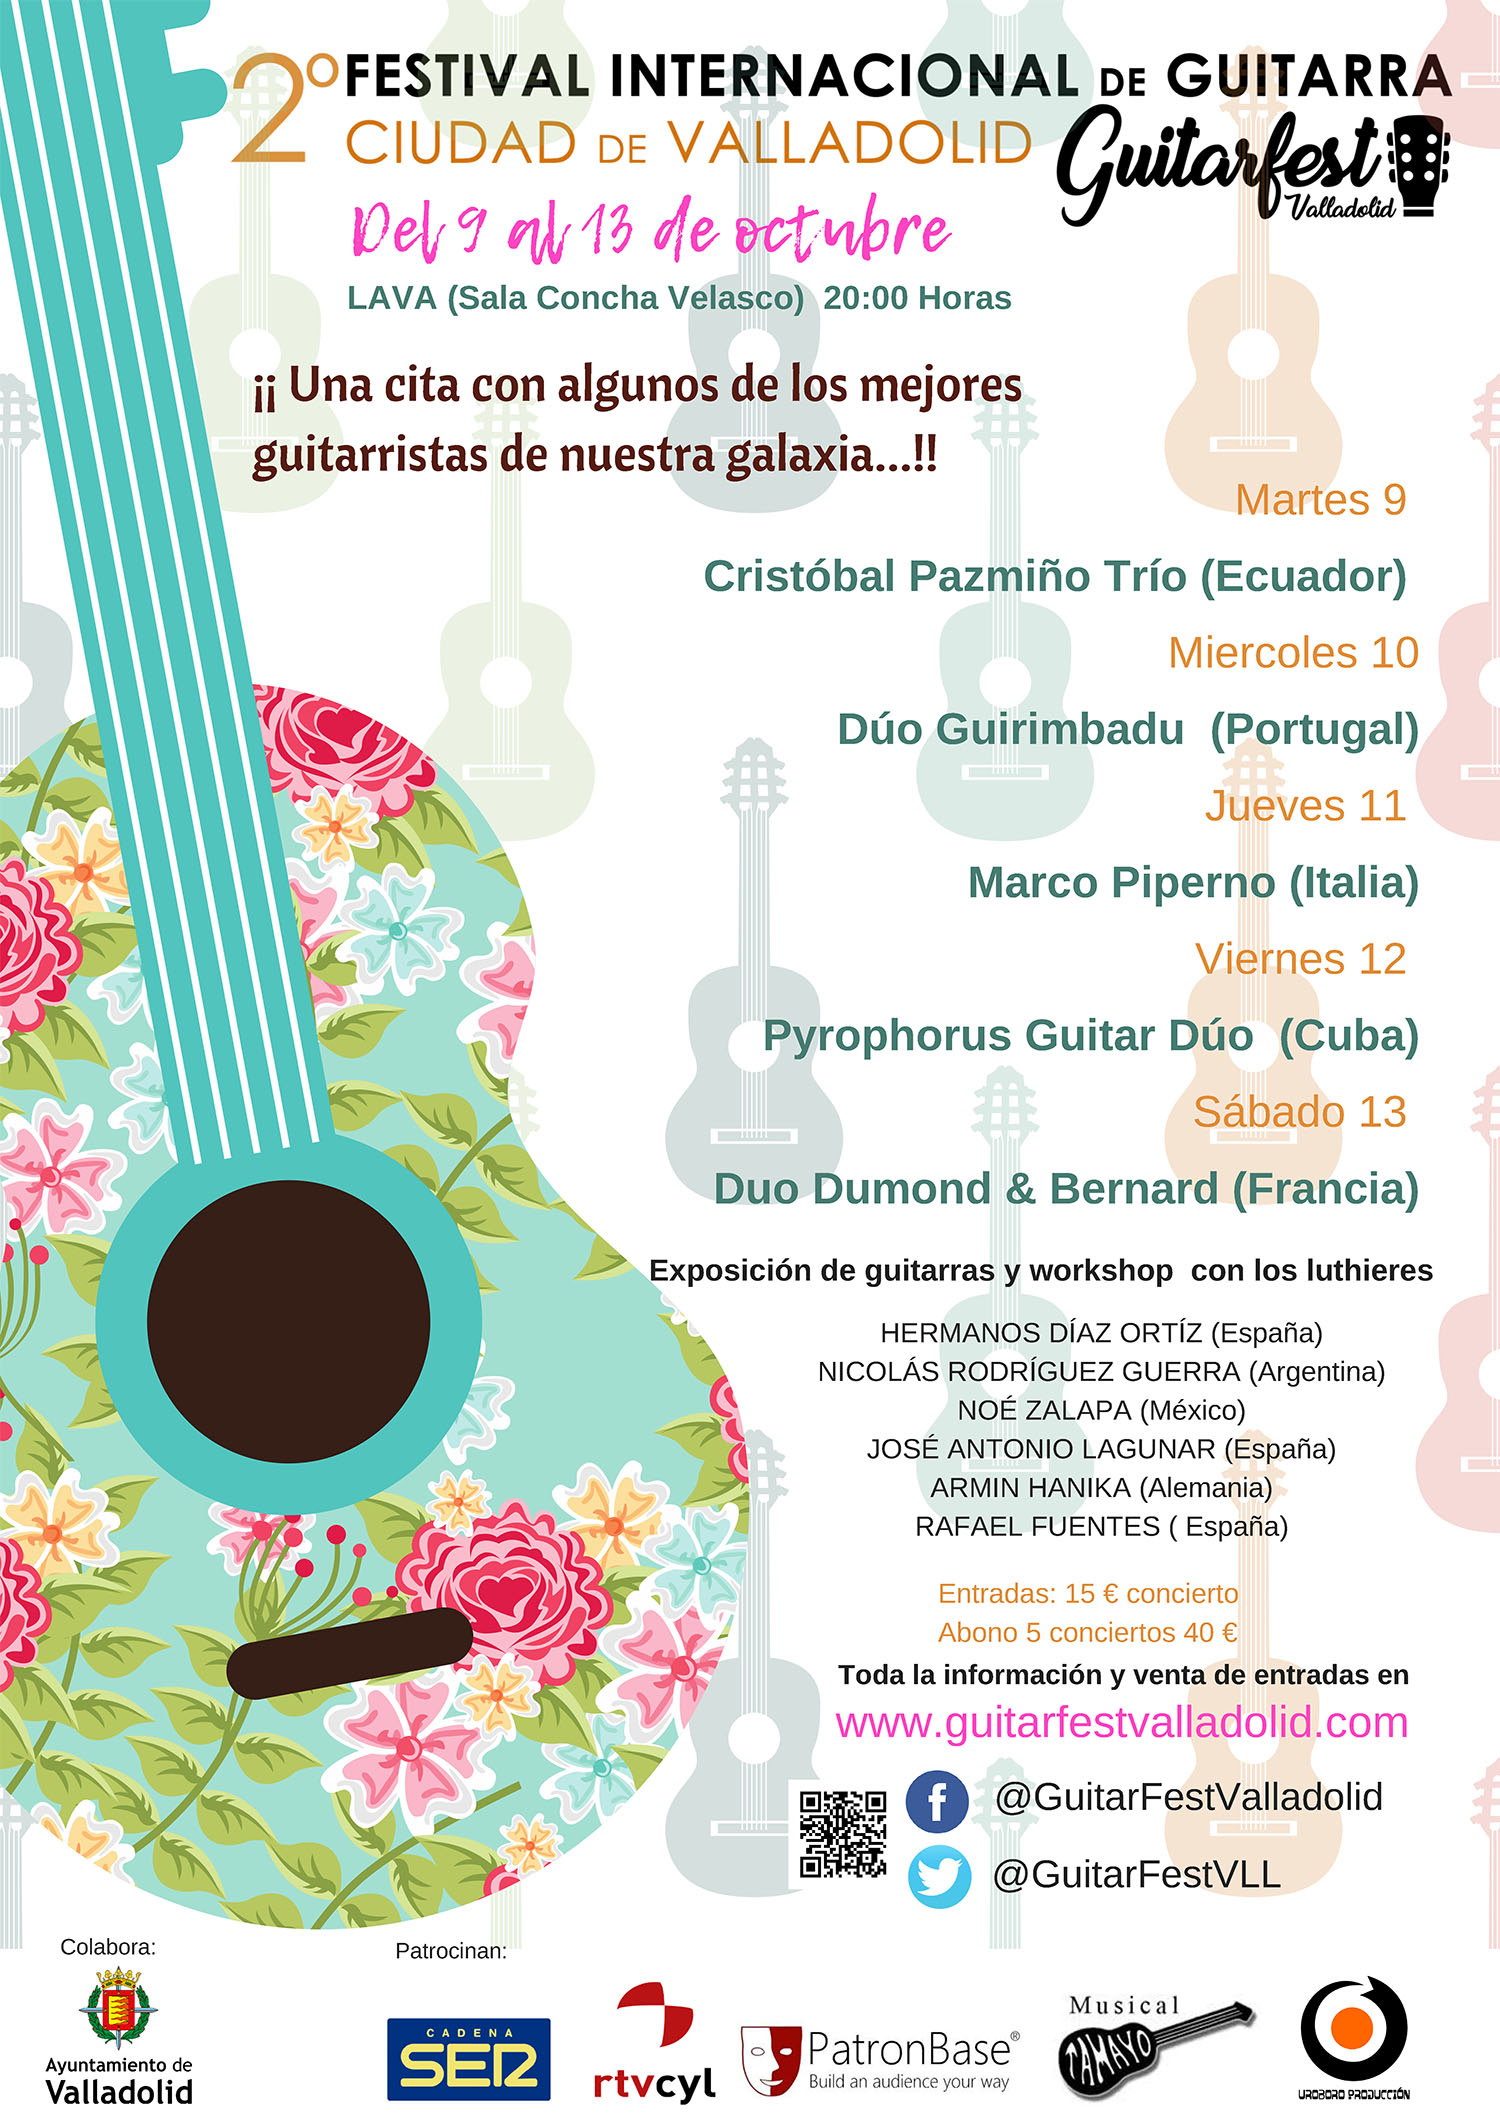 Senador Academia Marchito Guitarfest: 2º Festival Internacional de Guitarra, Ciudad de Valladolid |  Ayuntamiento de Madrigal de las Altas Torres